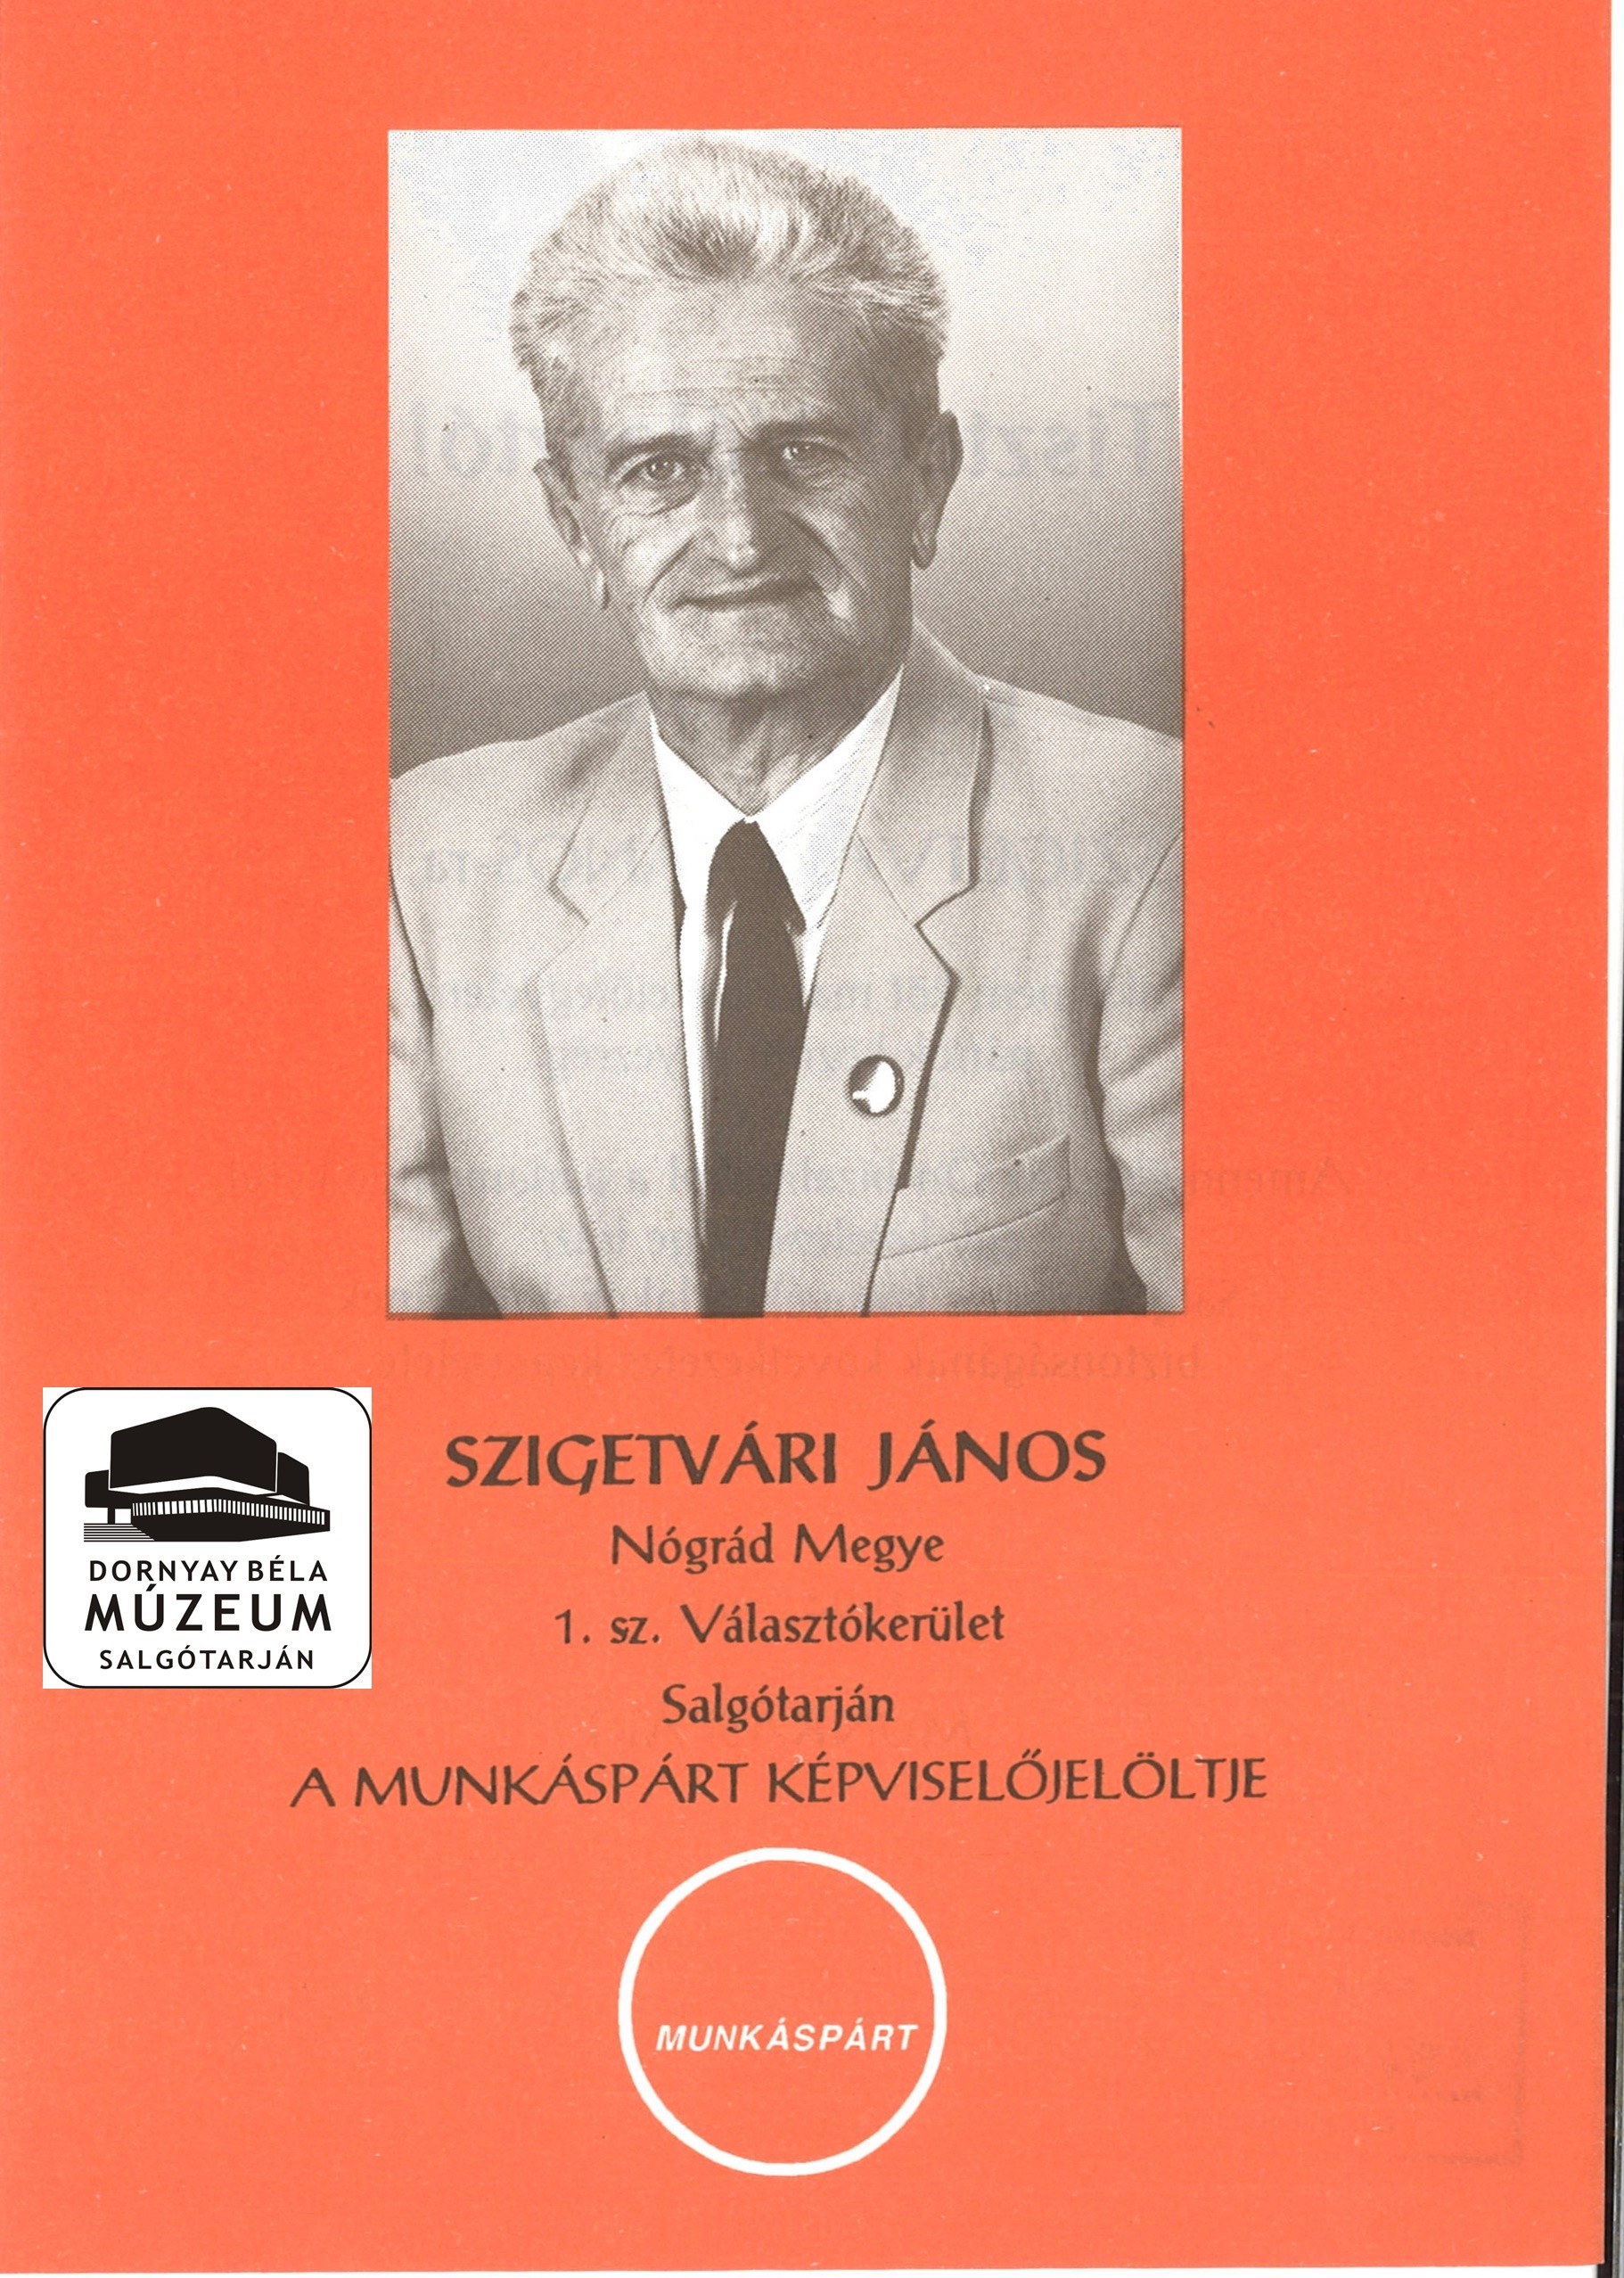 Szigetvári János Nógrád megye 1.sz. Választókerületében a Munkáspárt jelöltje (Dornyay Béla Múzeum, Salgótarján CC BY-NC-SA)